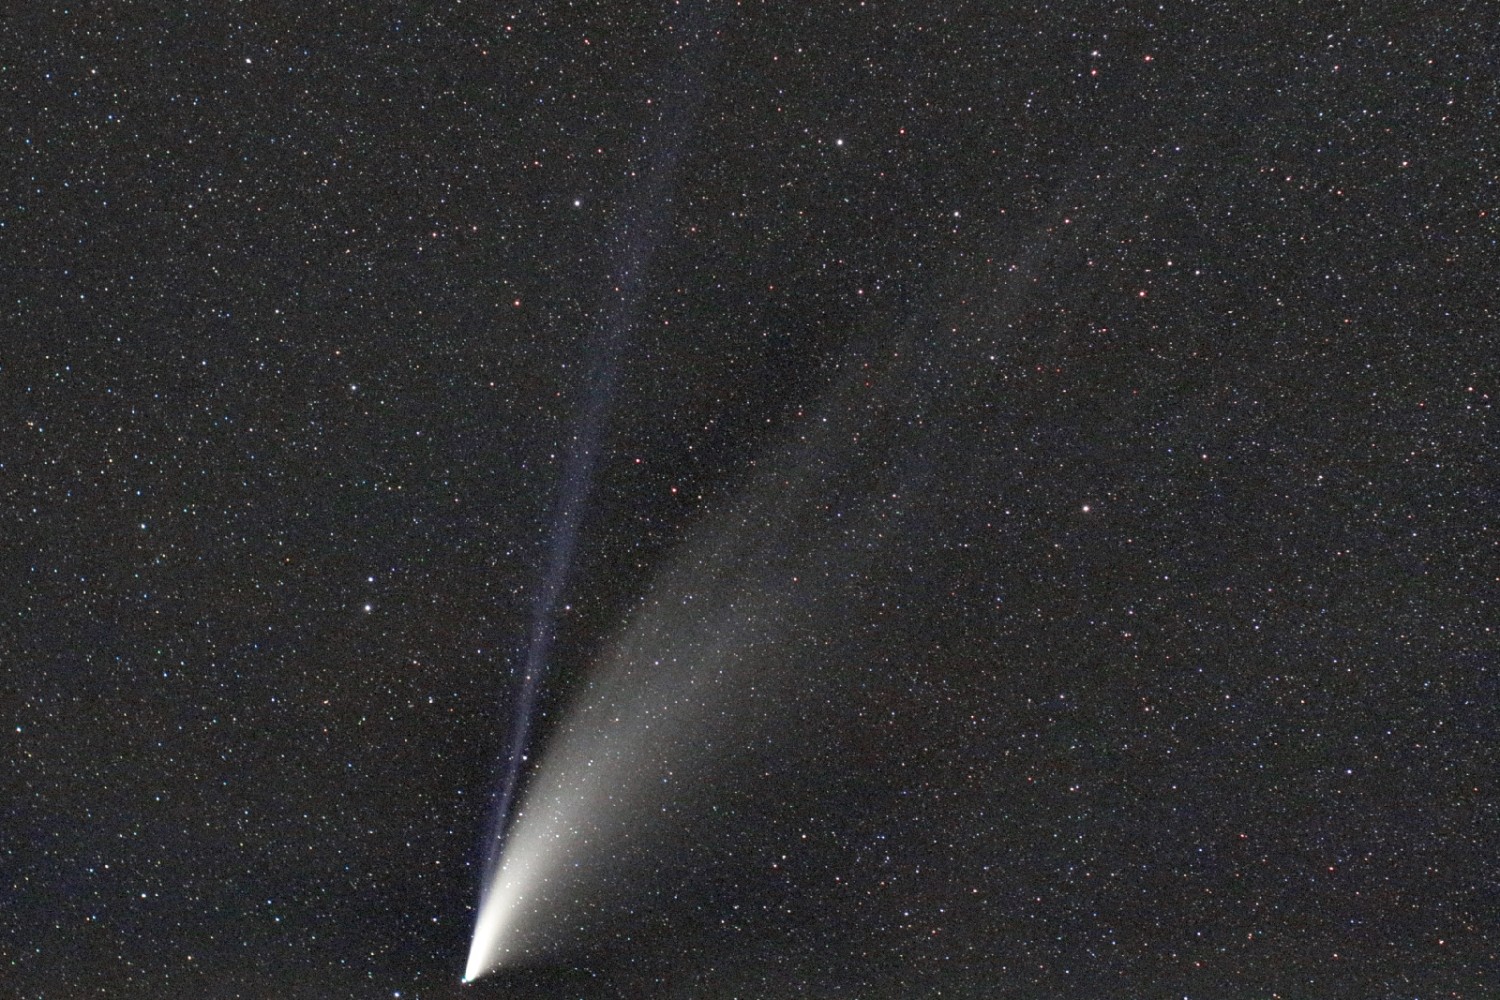 cometa c/2020 f3 neowise [18jul2020]...